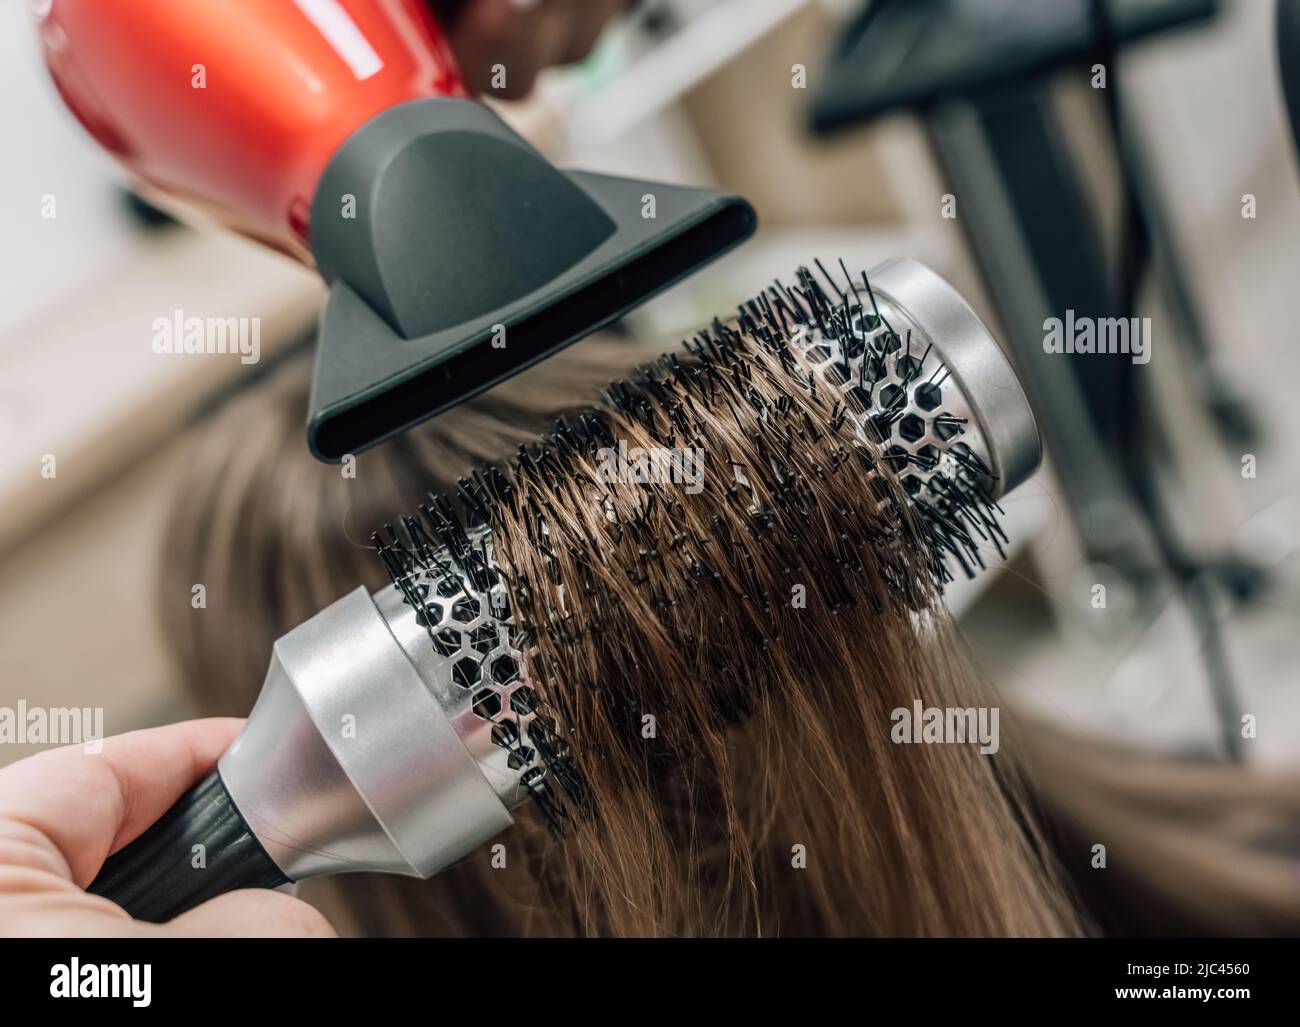 Asciugando i capelli biondi con un asciugacapelli e una spazzola rotonda. Foto di alta qualità Foto Stock